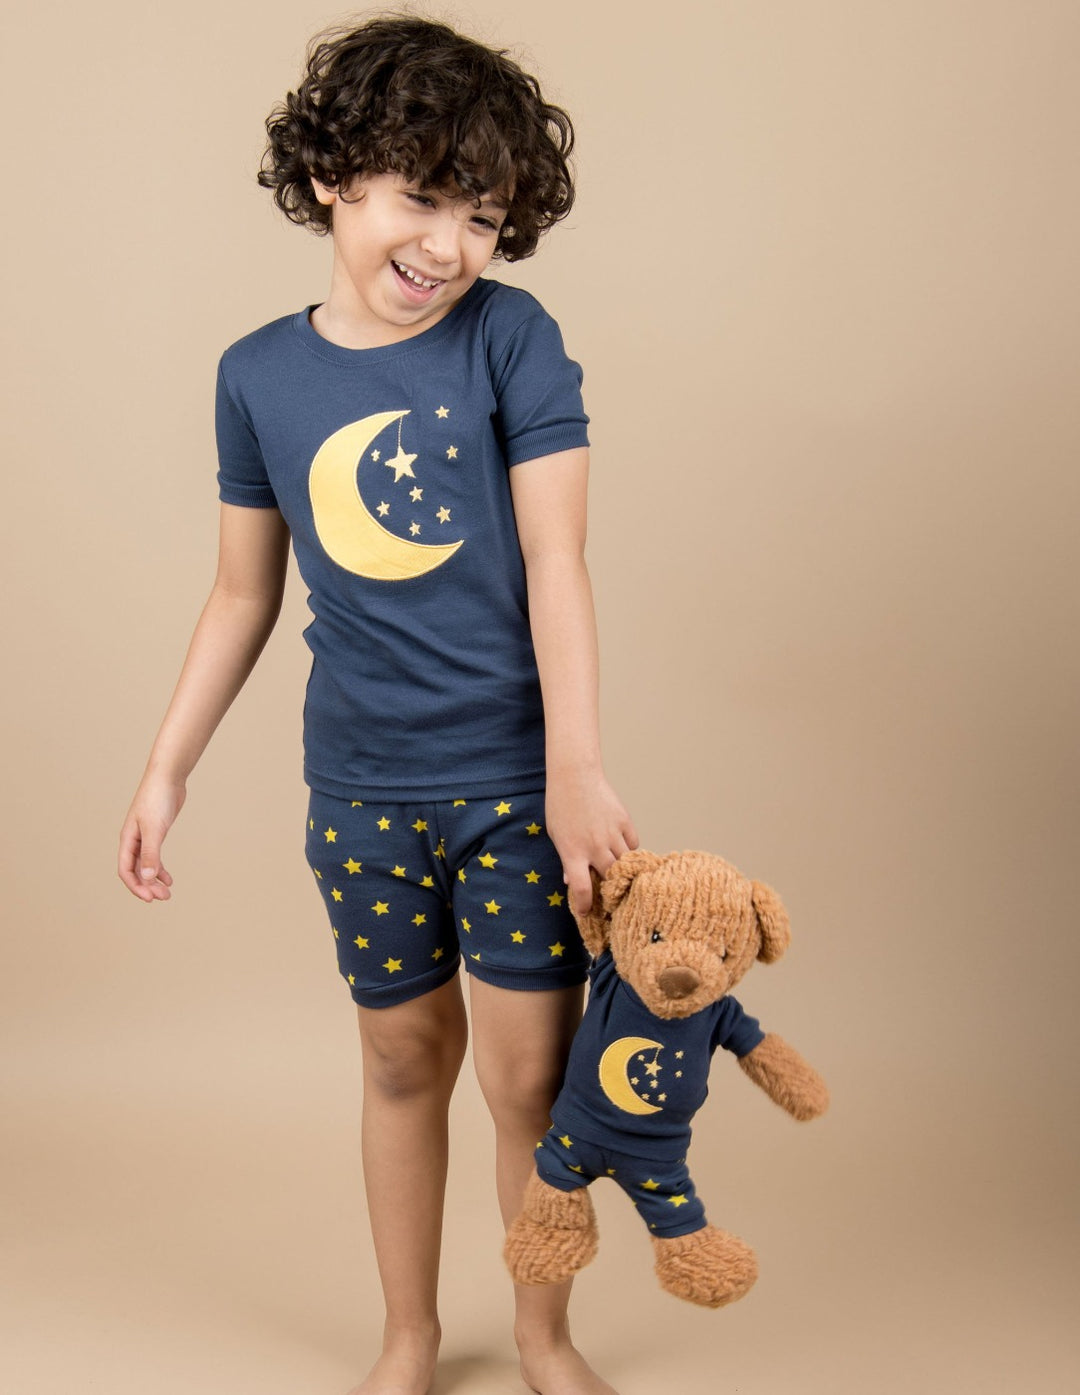 navy moon and stars shorts kids pajamas